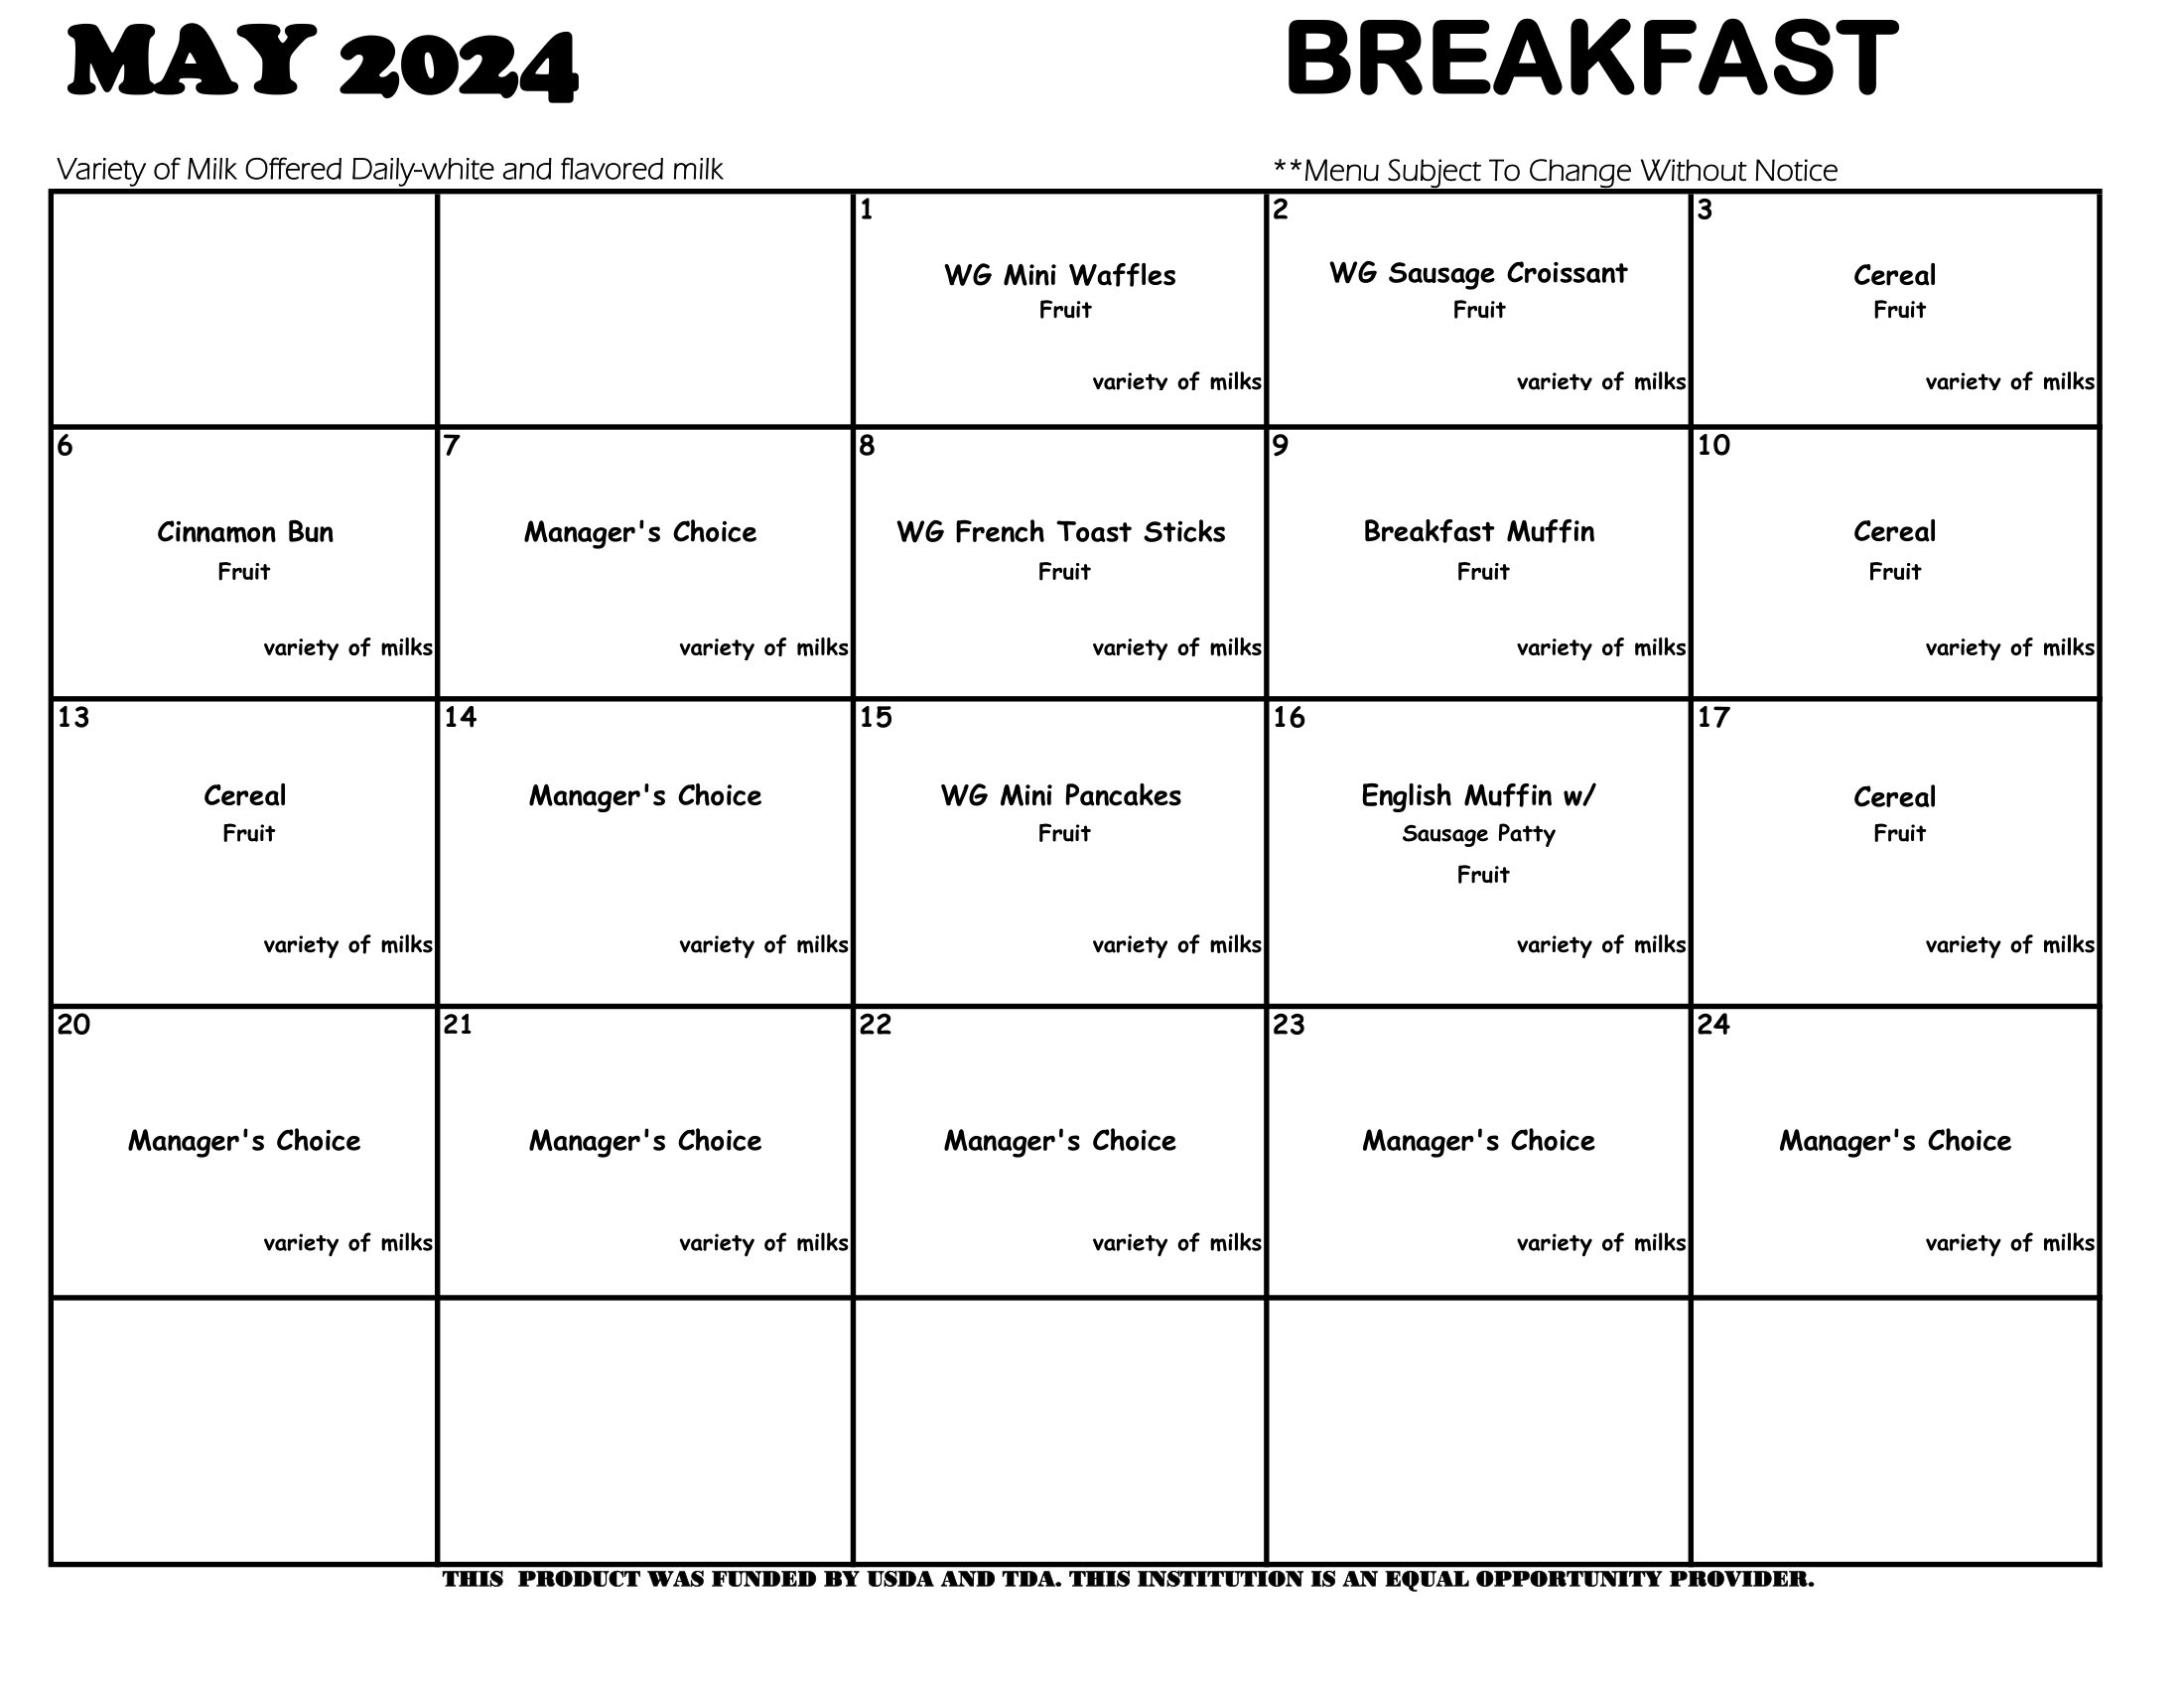 May 2024 Breakfast menus